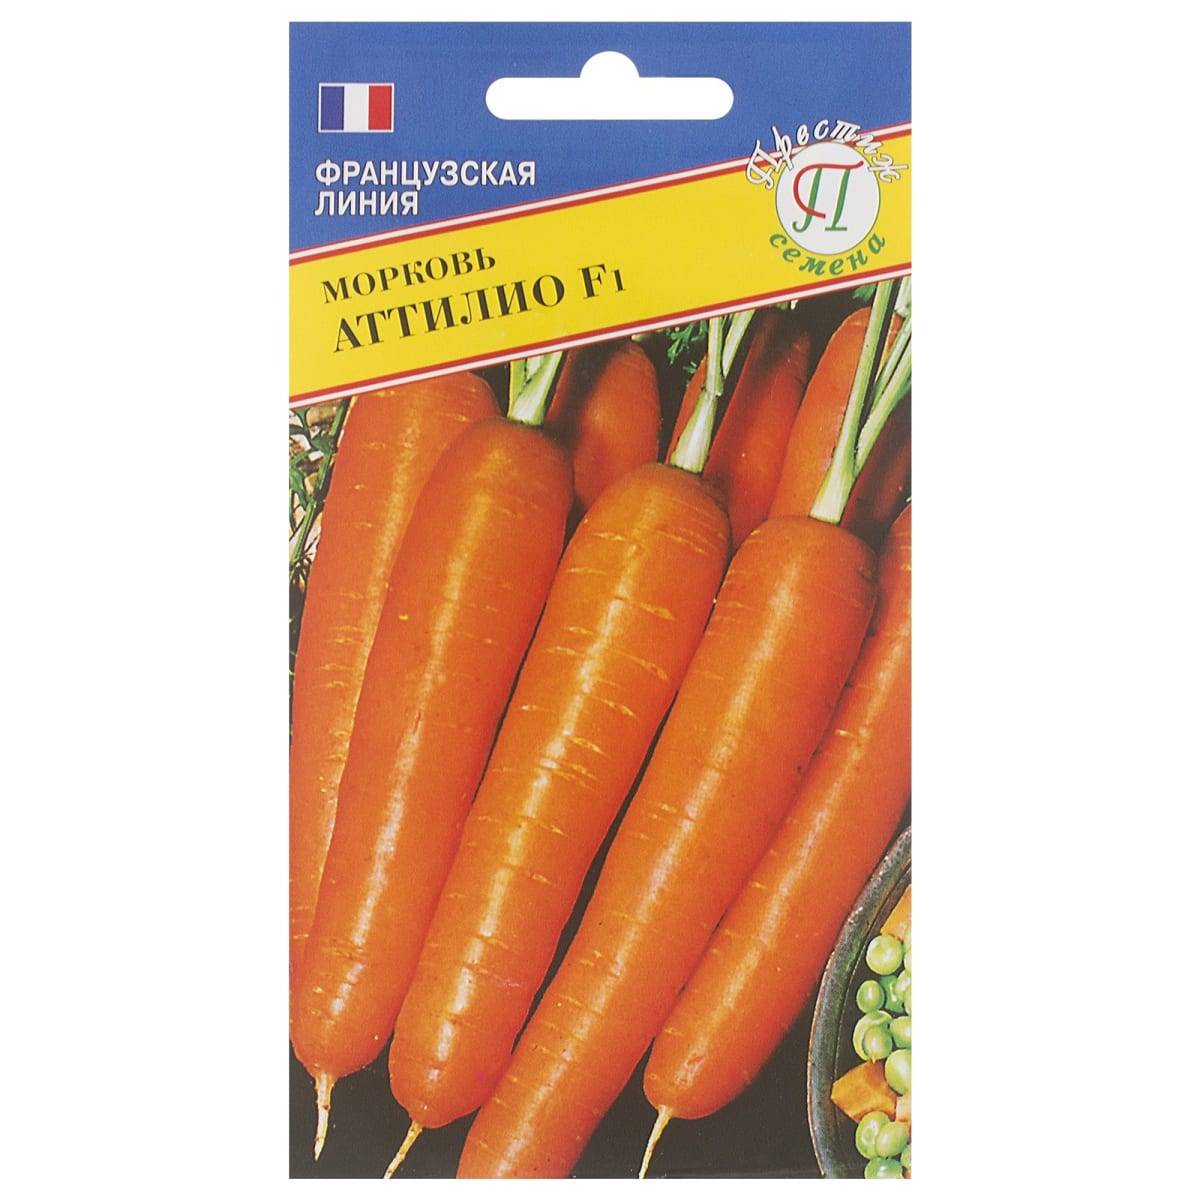 Позднеспелый столовый гибрид моркови болеро f1: описание и особенности выращивания